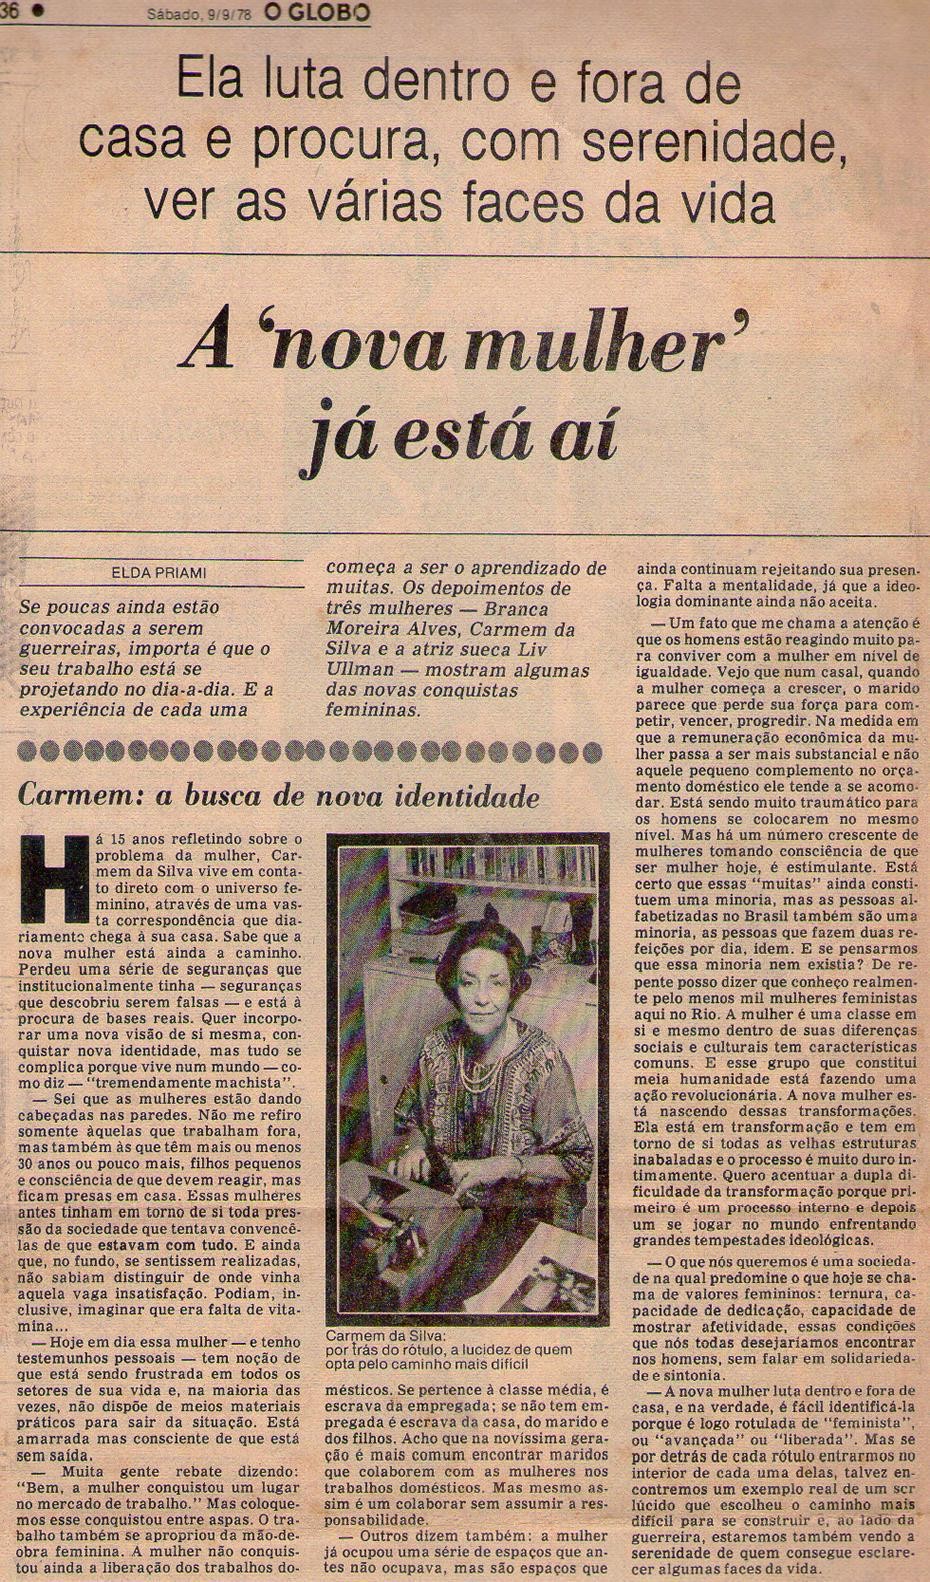 09 de Setembro de 1978 - O Globo. A 'nova mulher' já está aí.